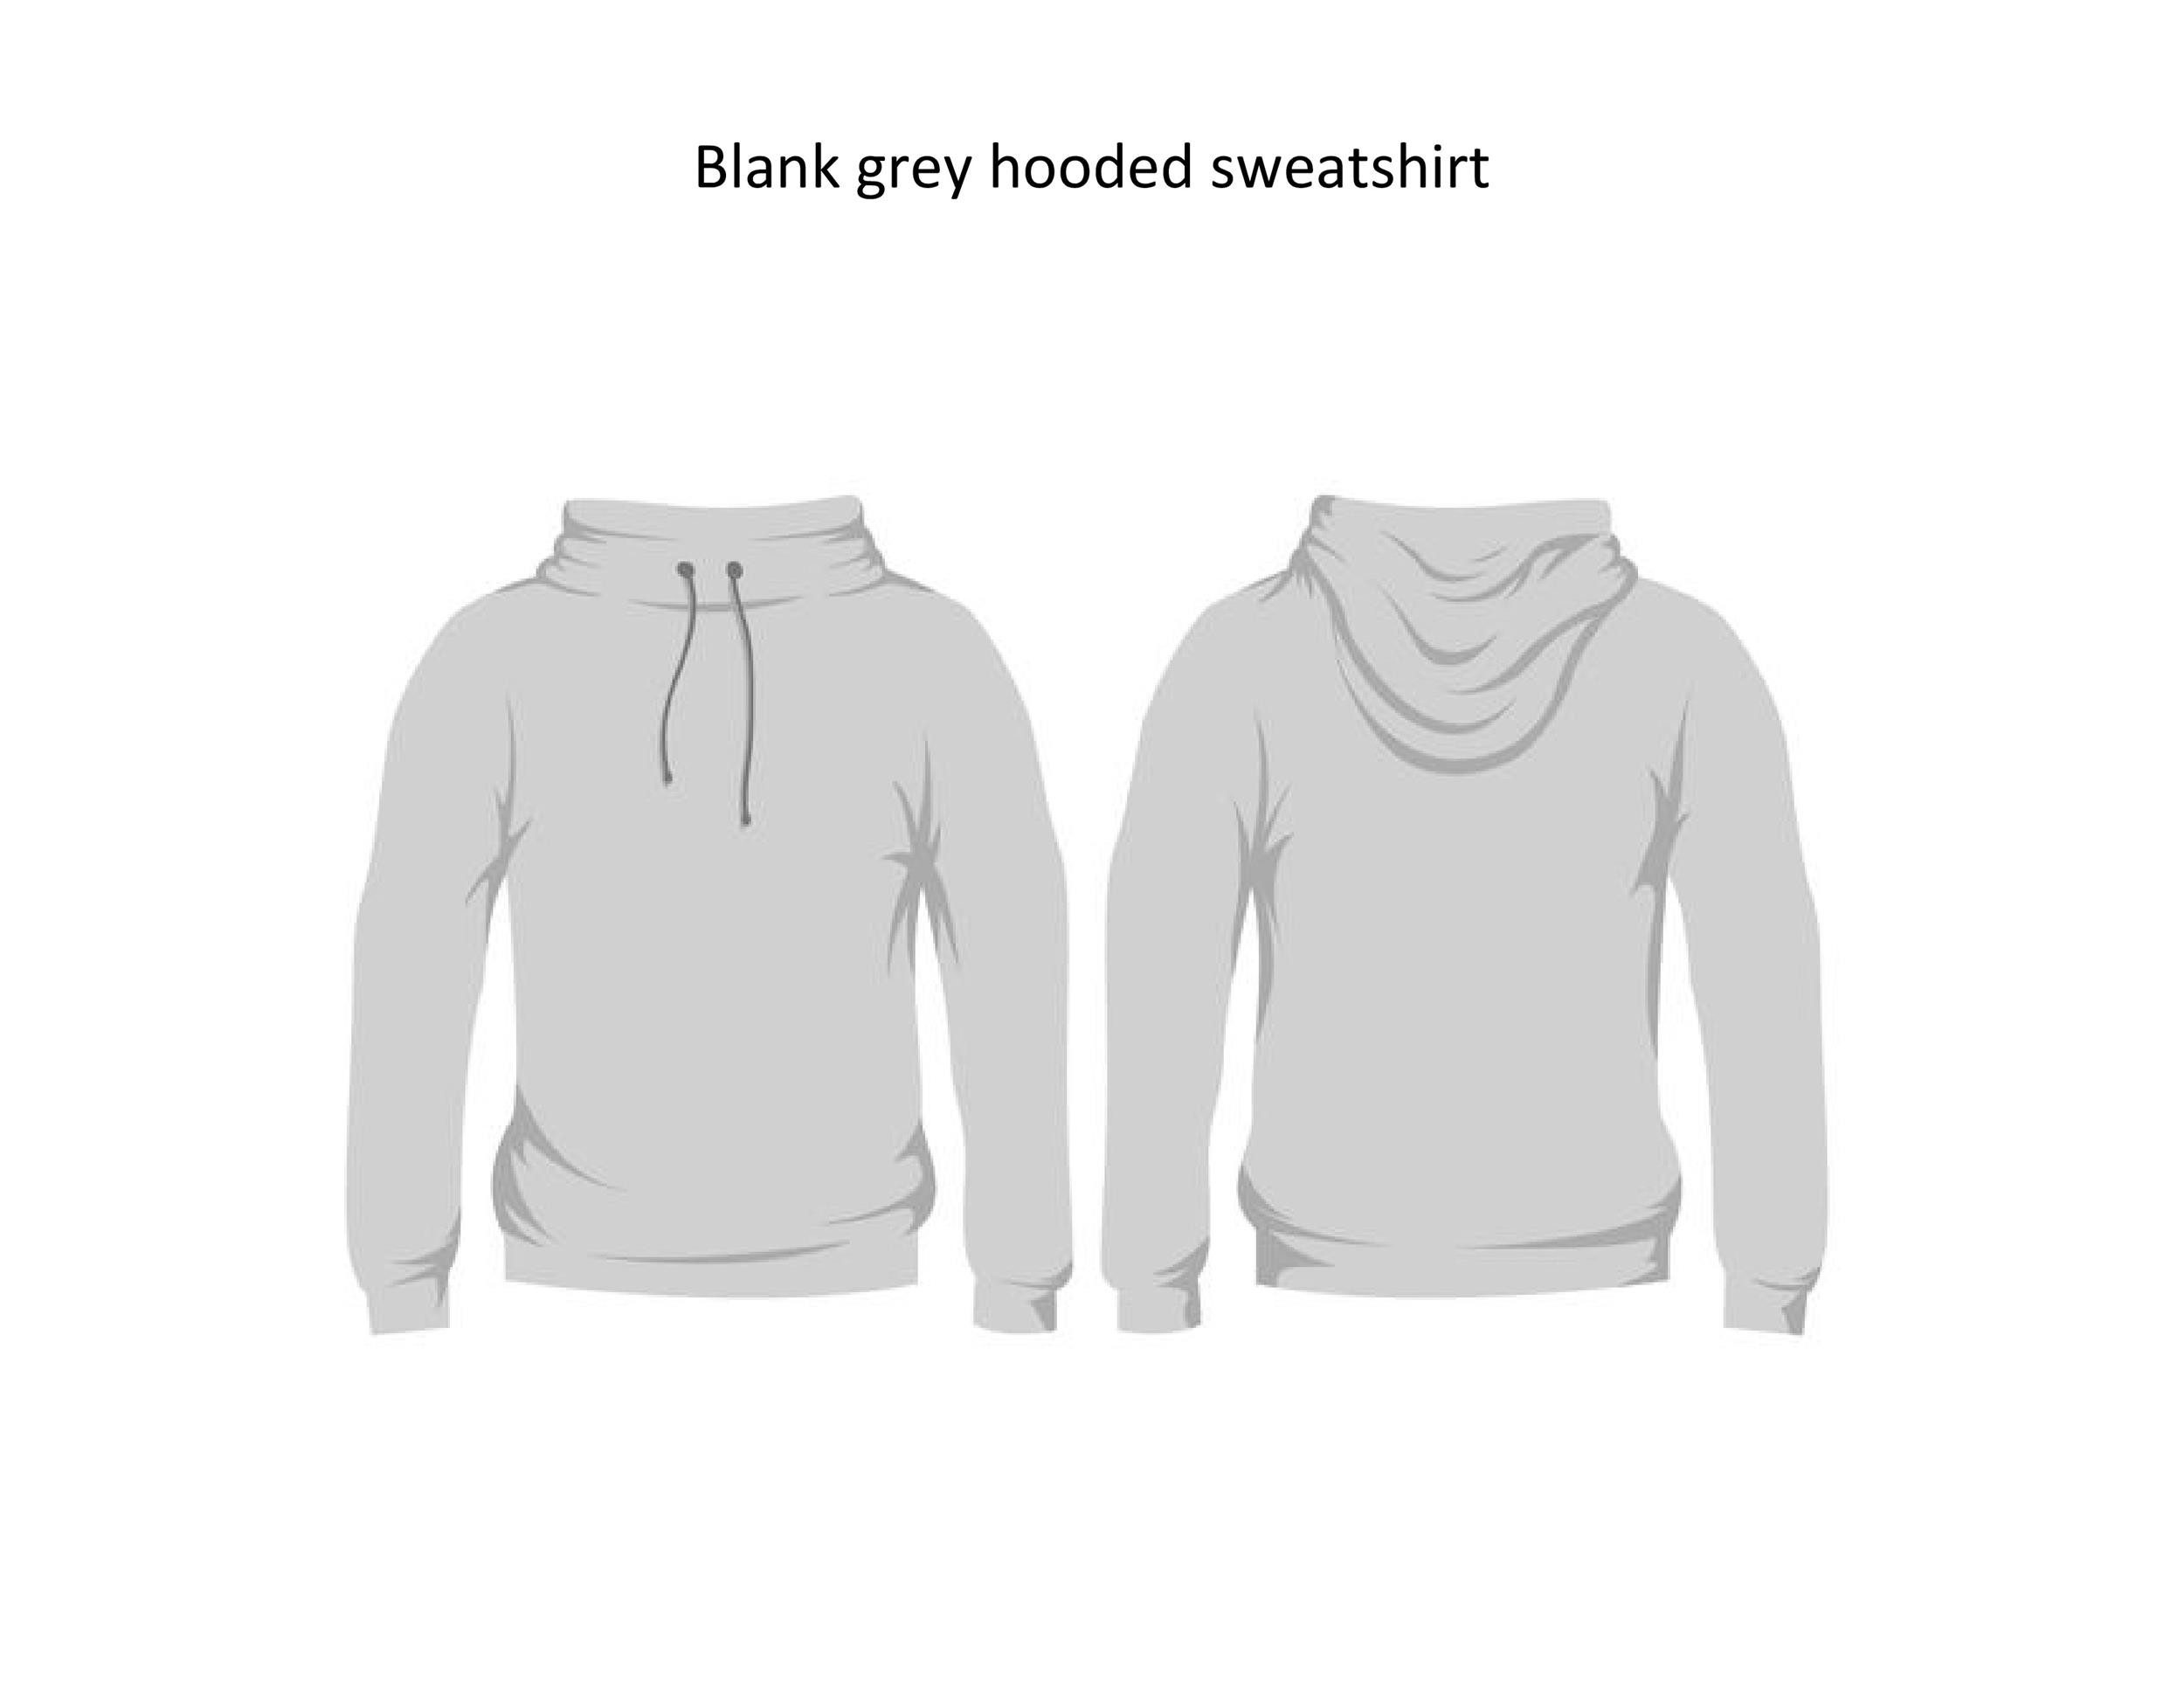 Free hoodie template 35